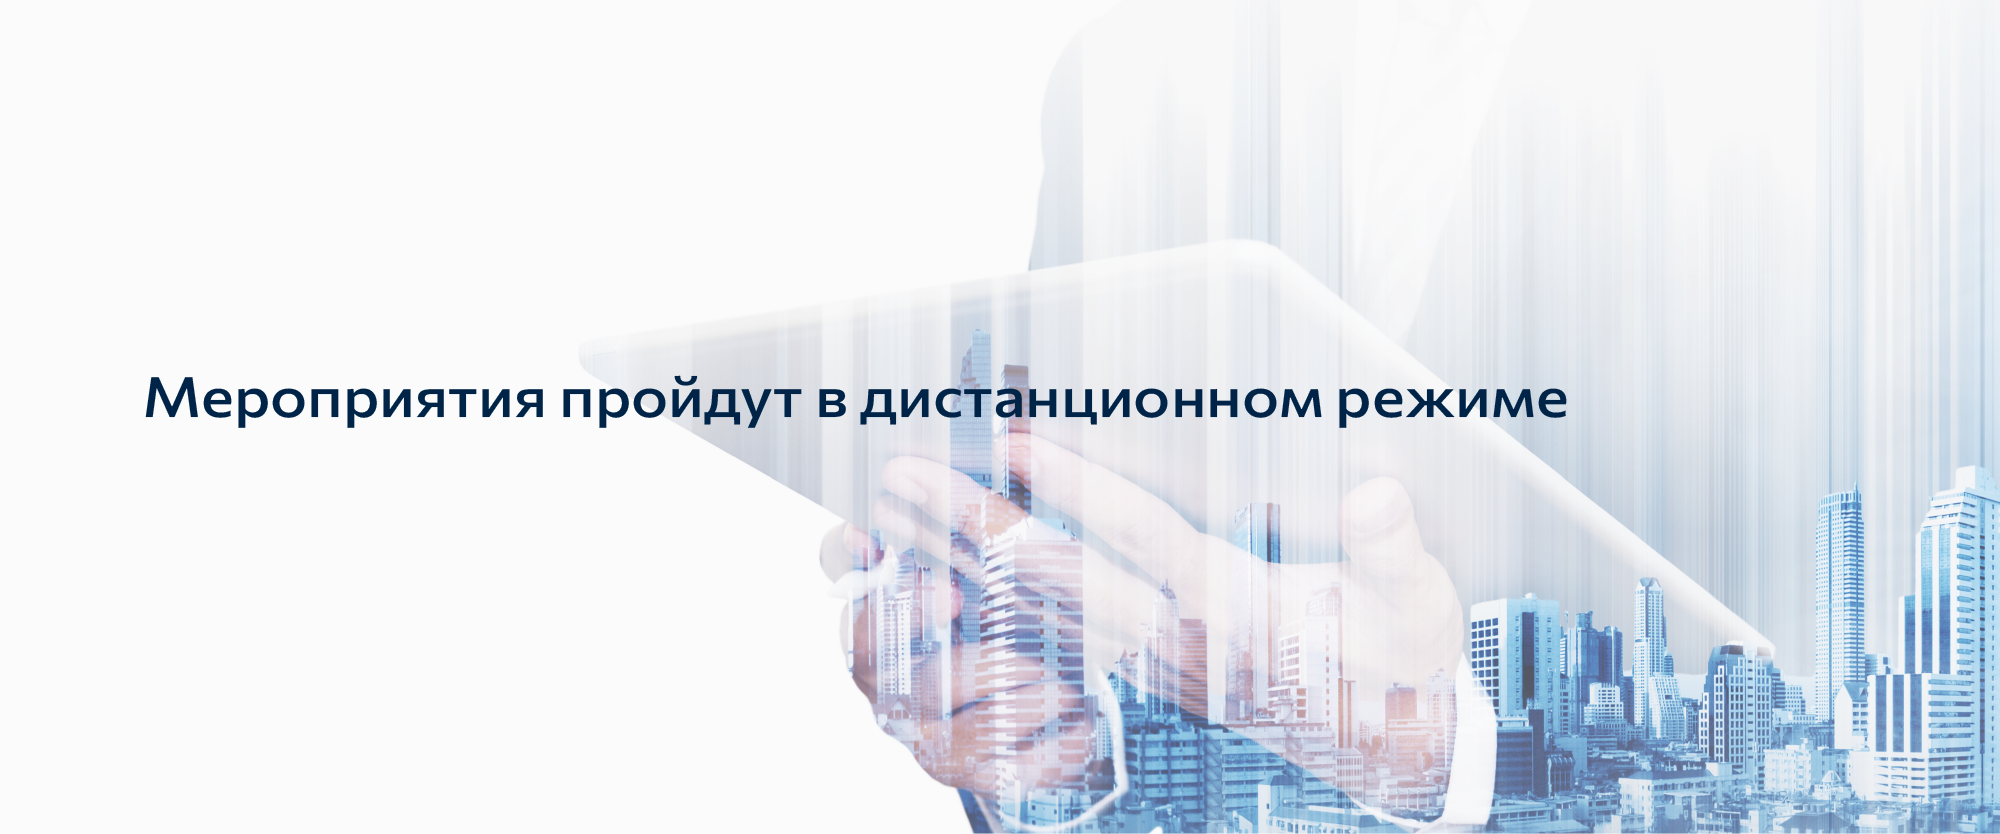 Corp univer ru. Взаимообучение городов баннер для сайта.